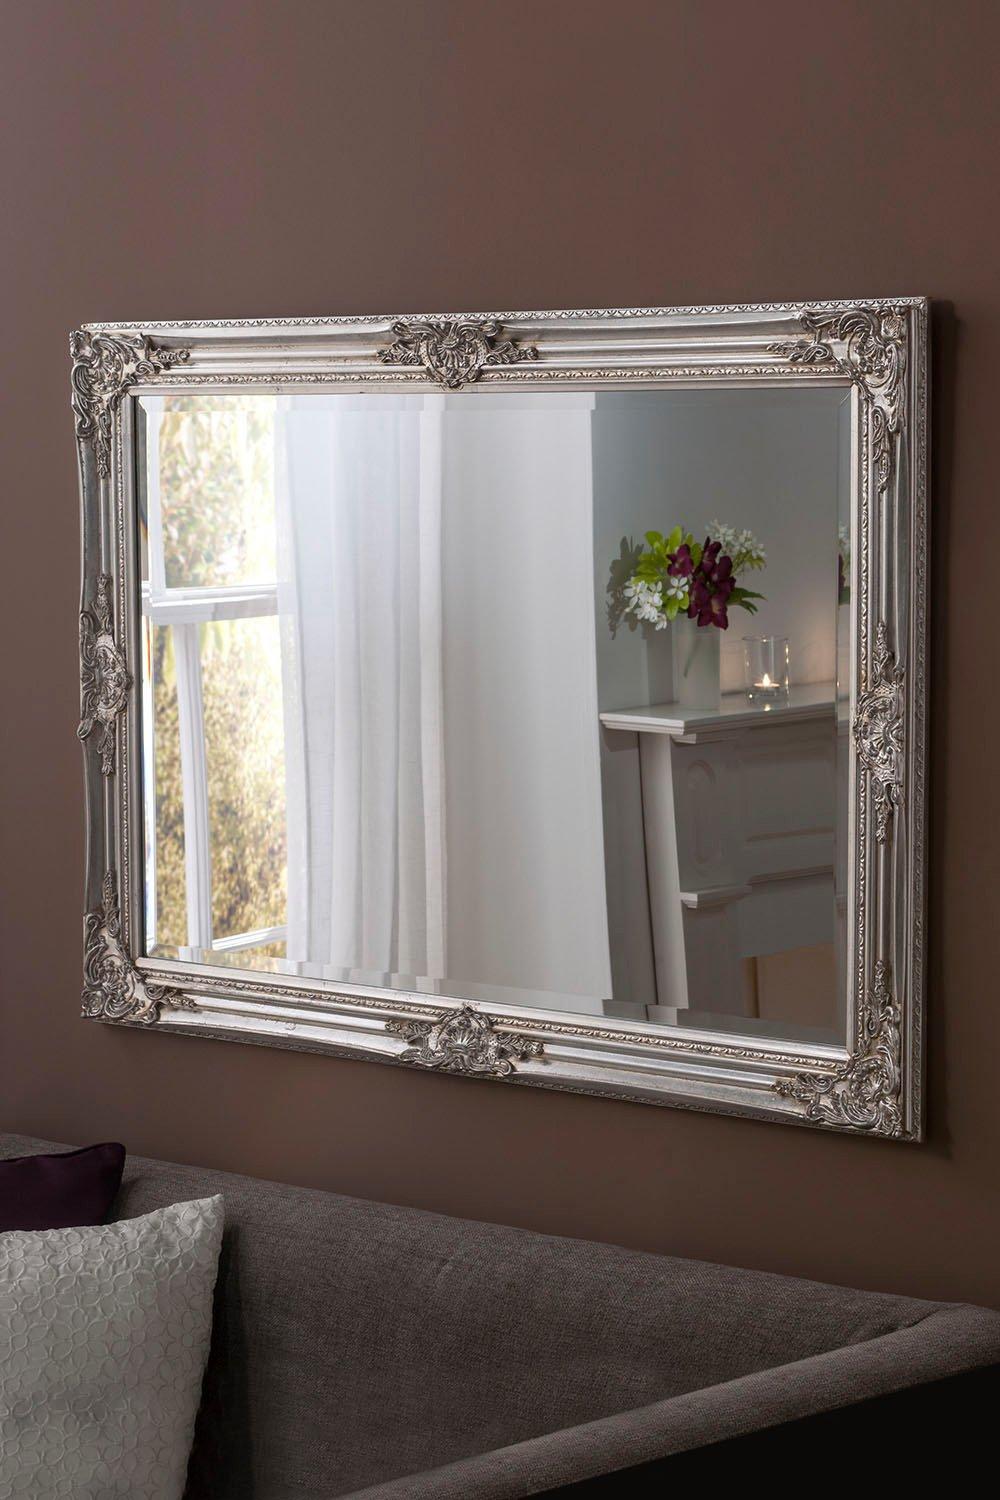 Decorative Silver Mirror 104 x 74cm